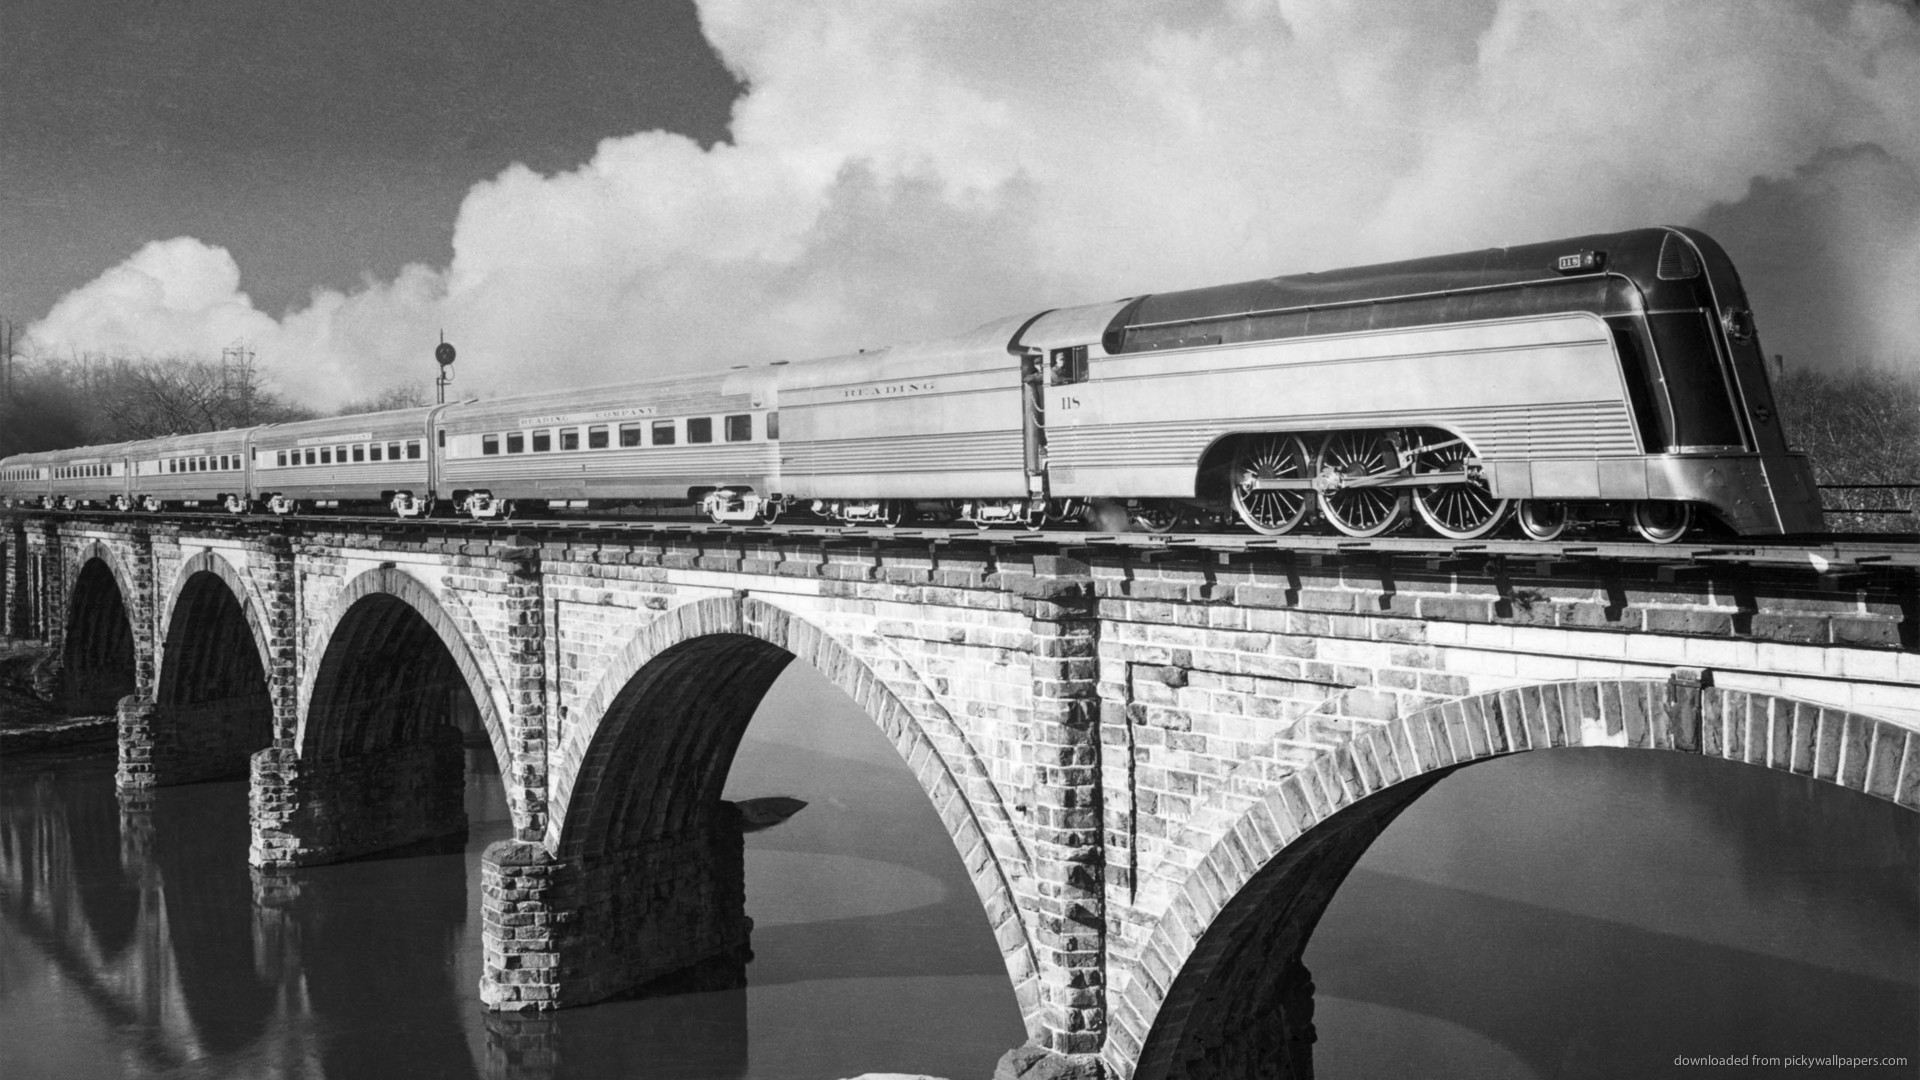 1920x1080 Futuristic steam train on a bridge for 